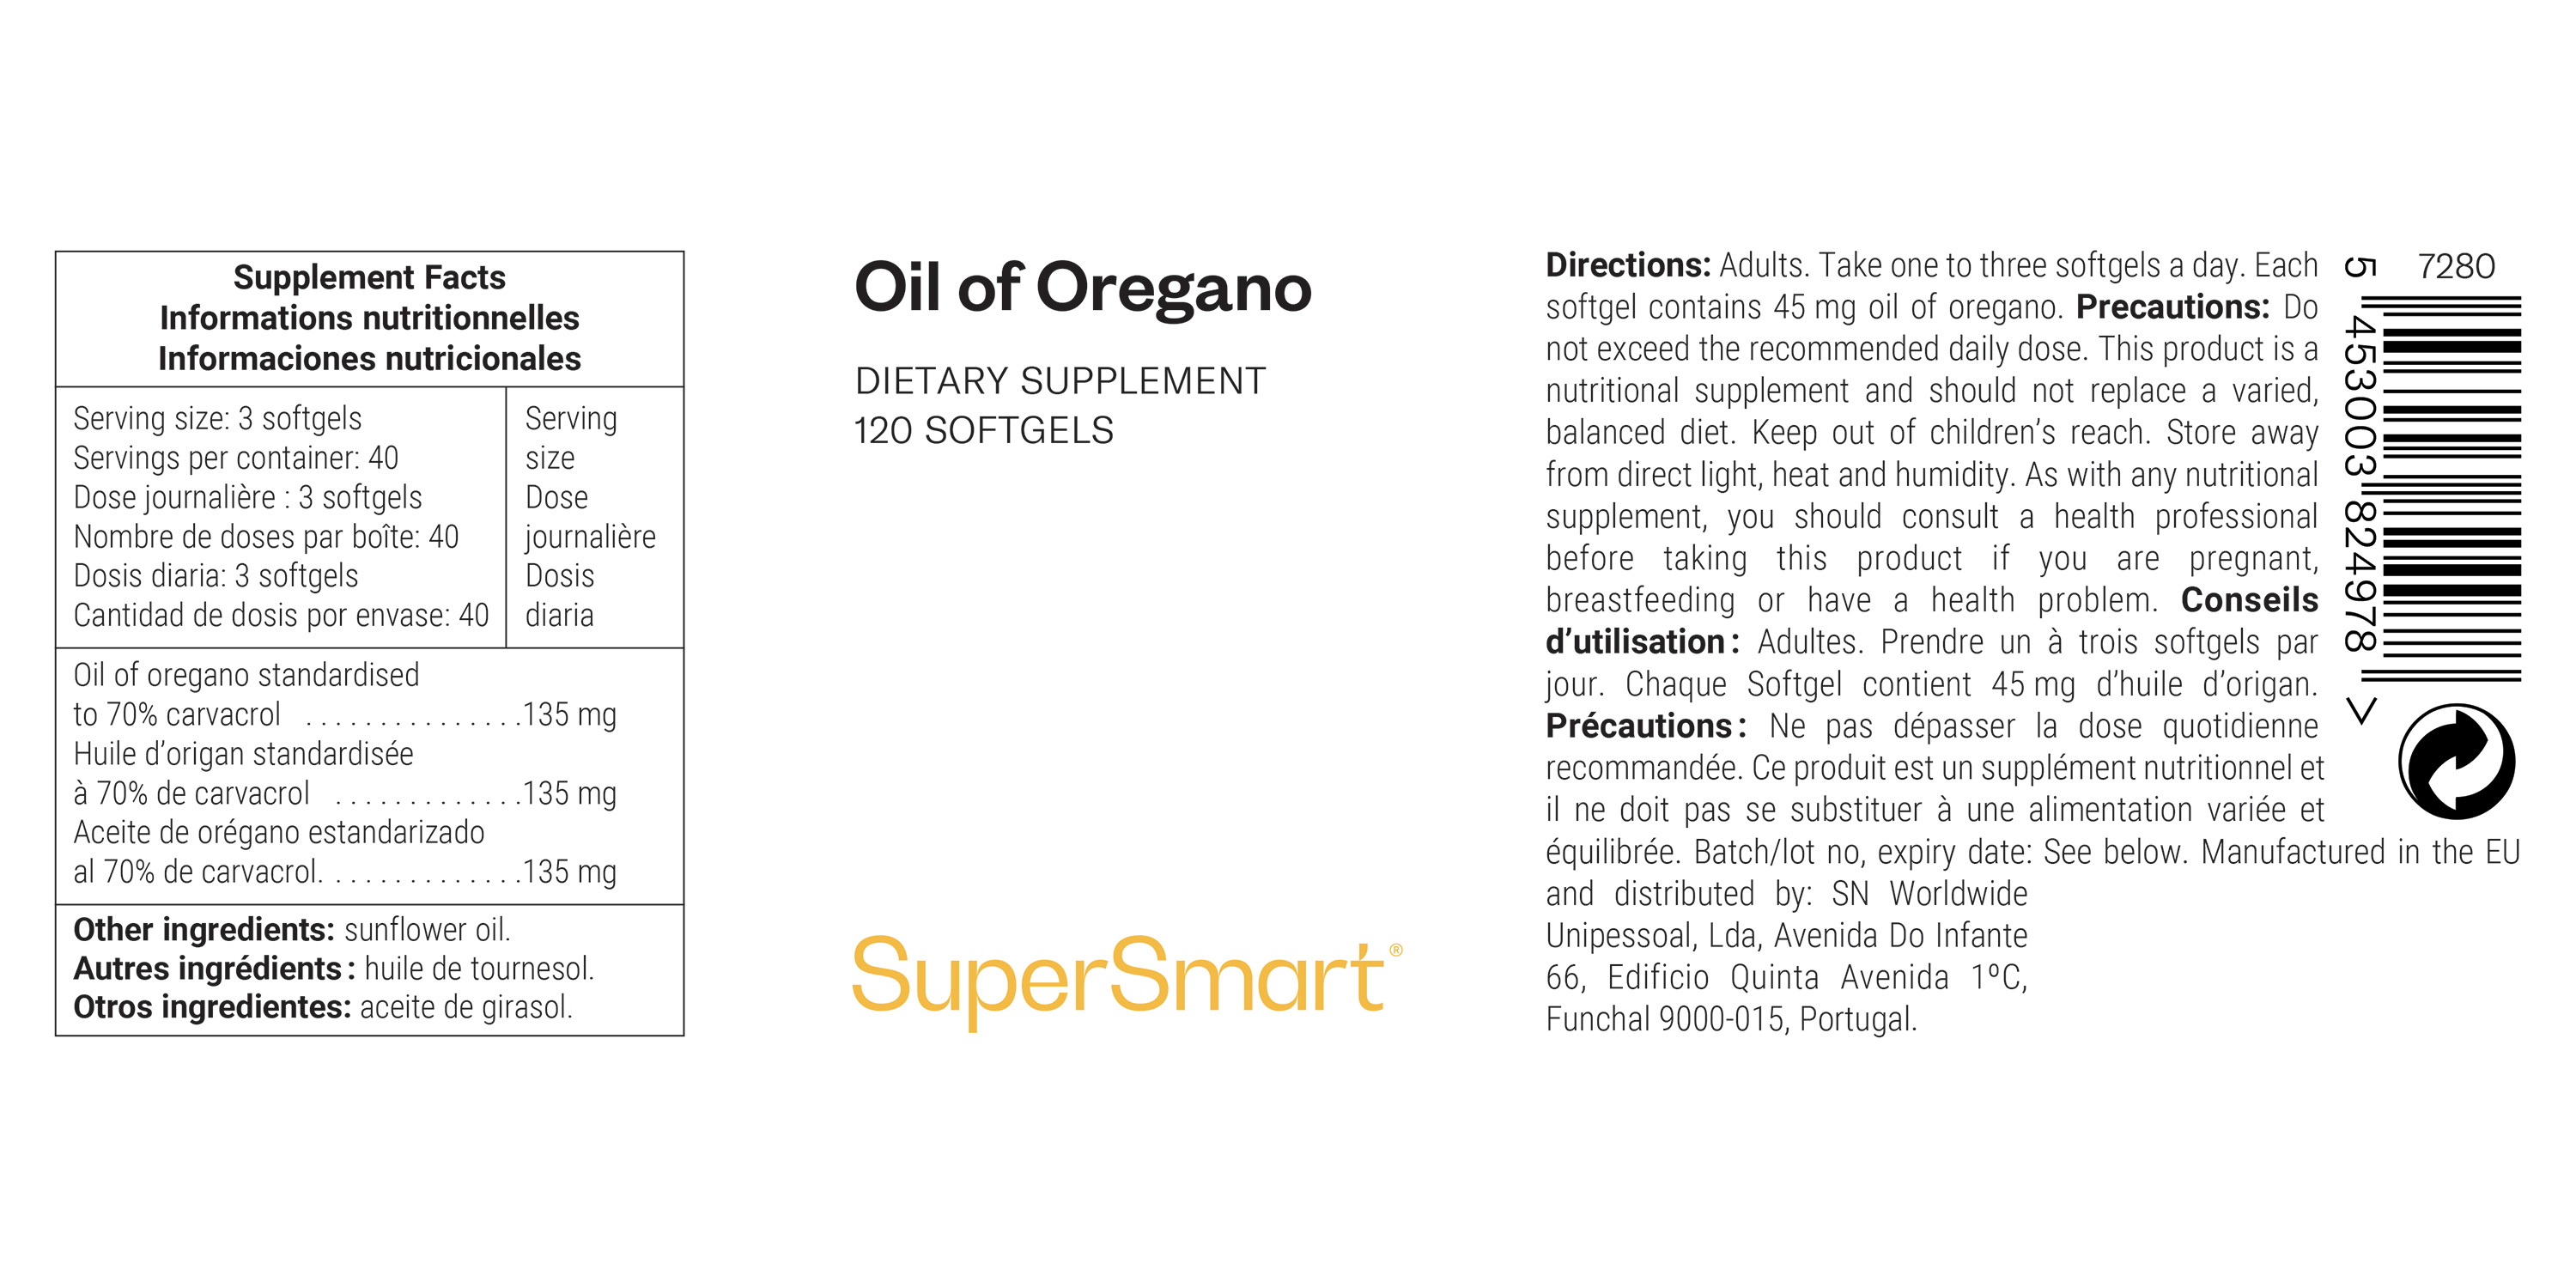 Oil of Oregano Supplement